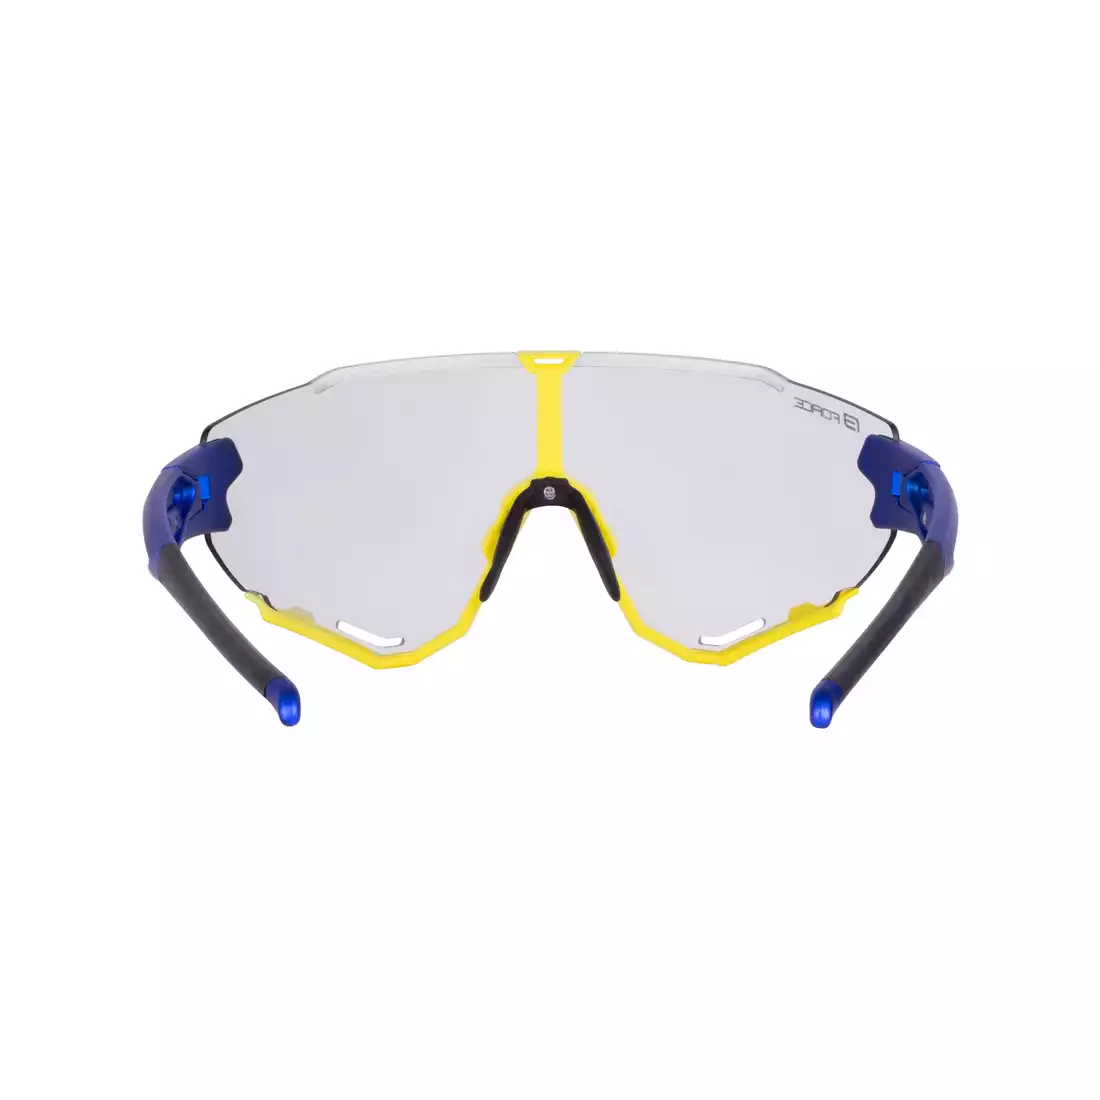 FORCE CREED Okulary sportowe fotochromowe, niebiesko-żółte